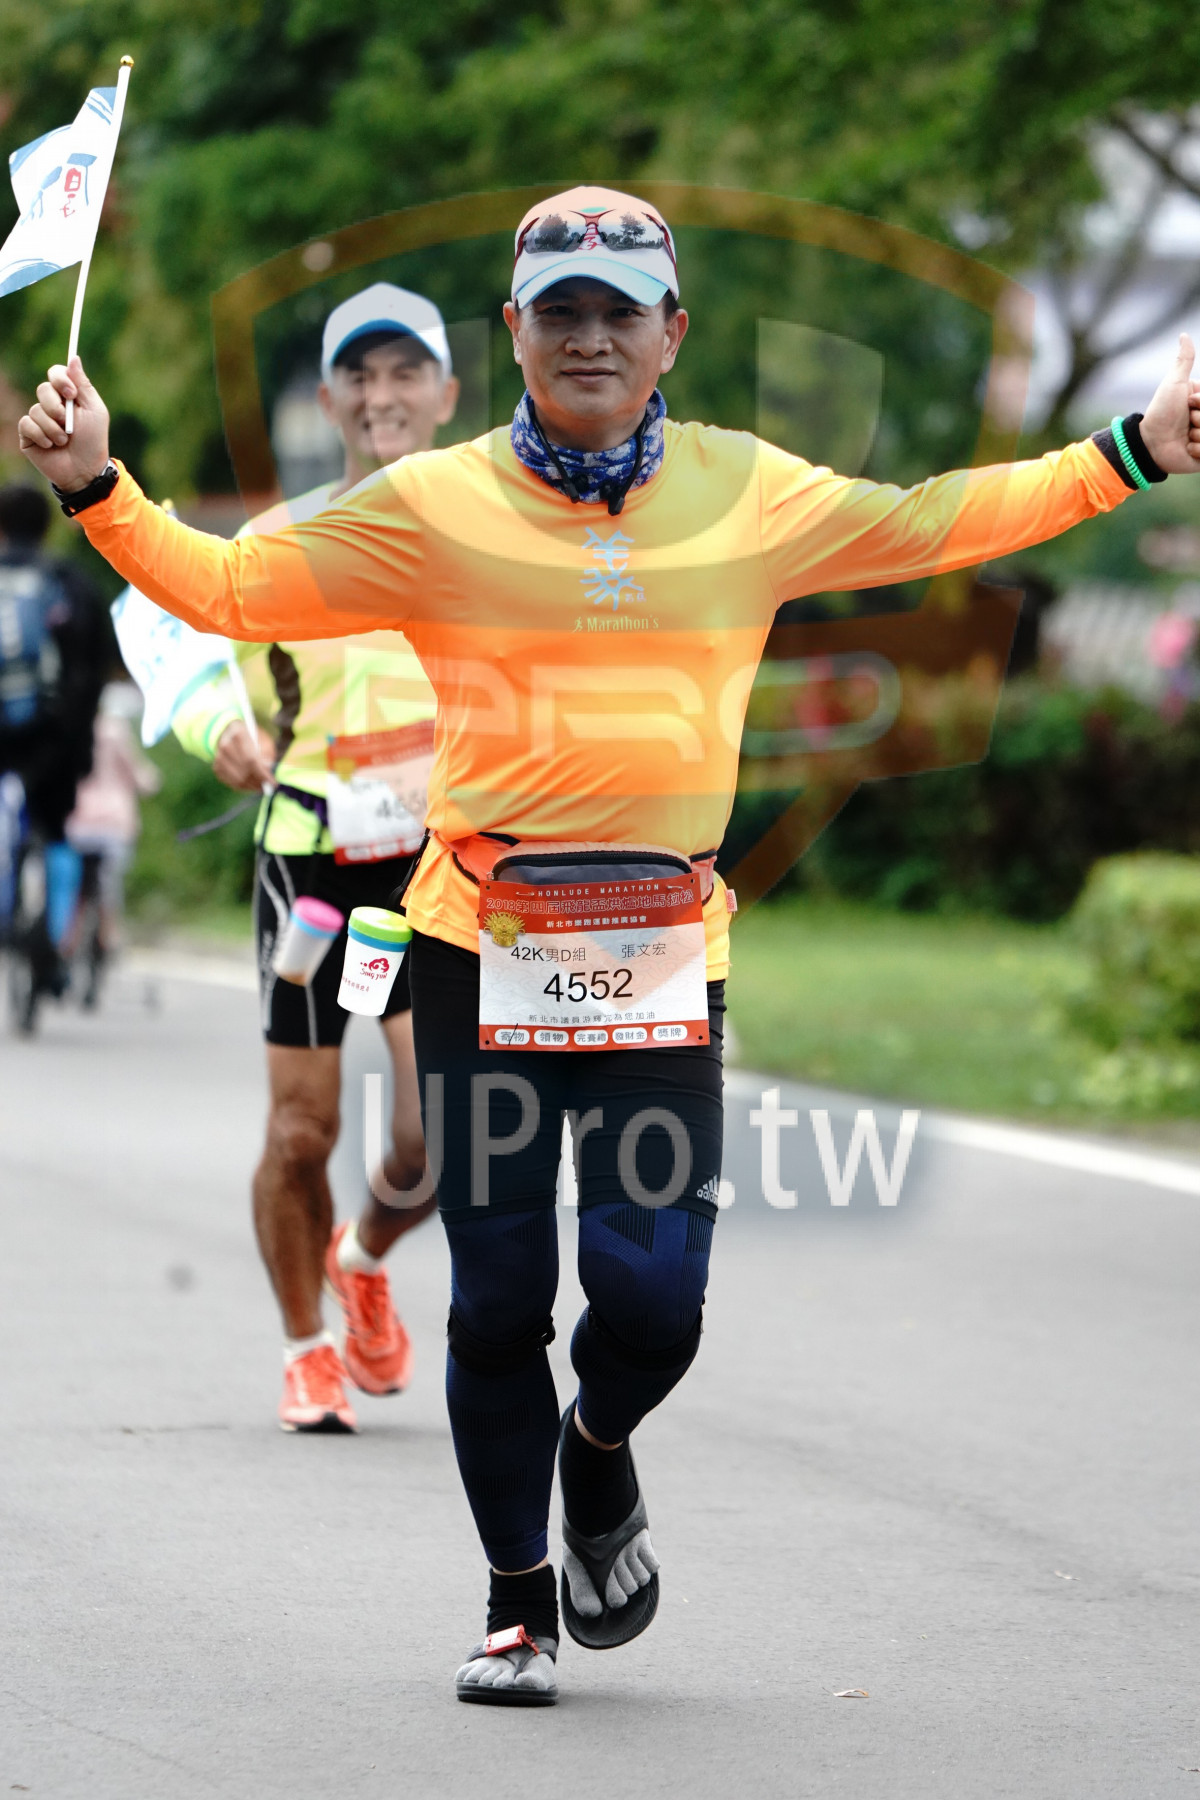 Marathon's,4552,1R|